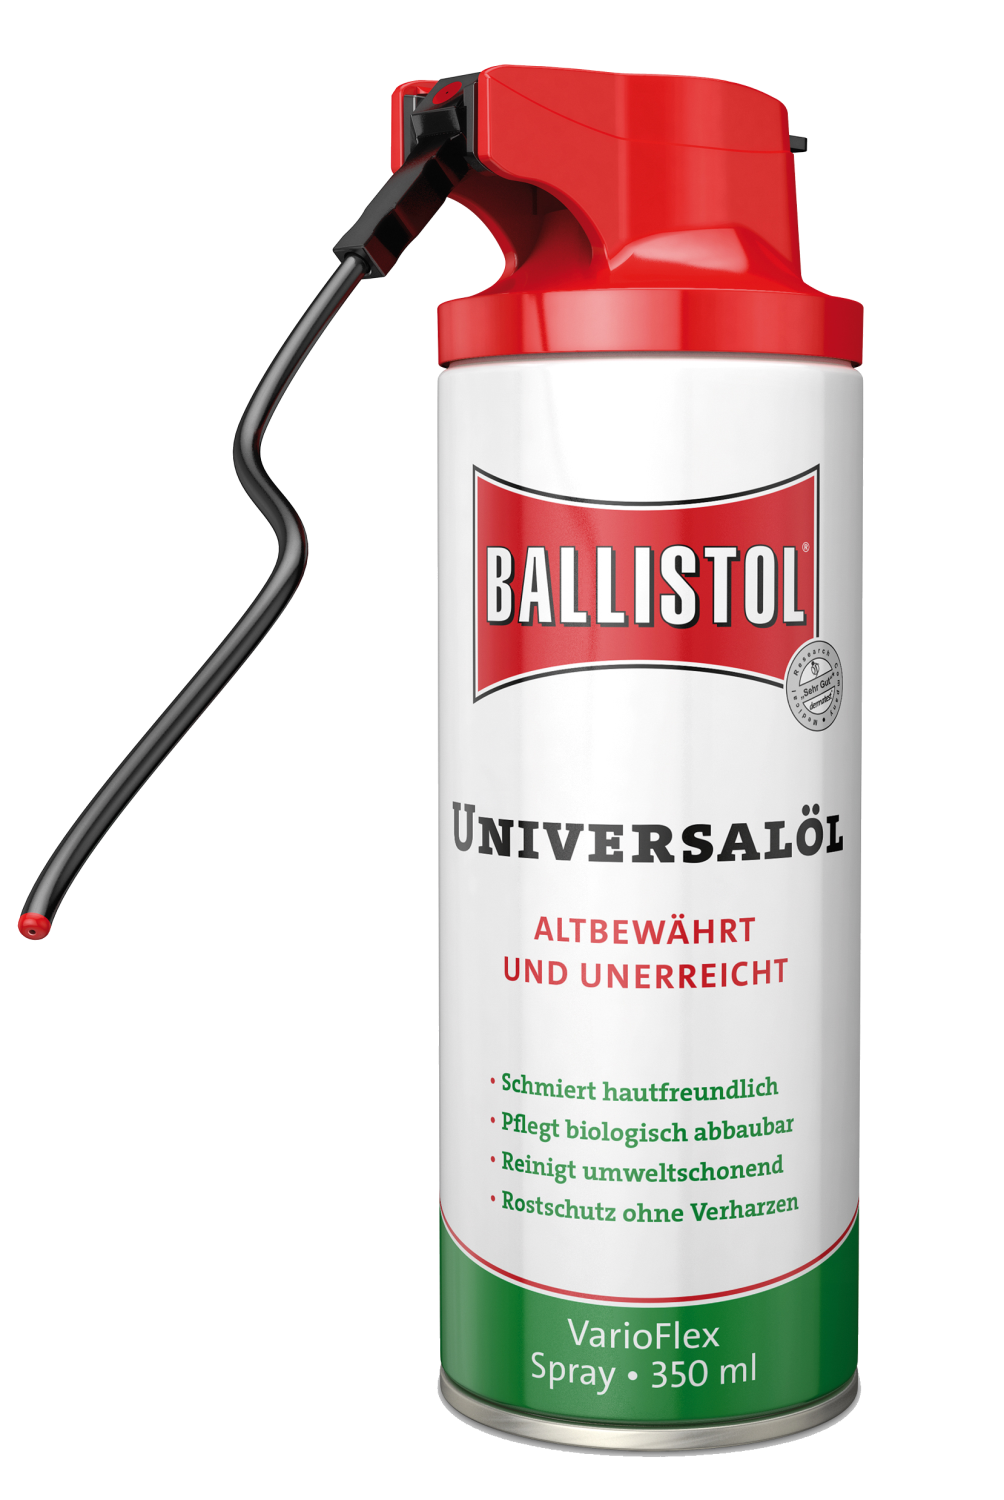 Ballistol Universal-olje 350ml VarioFlex